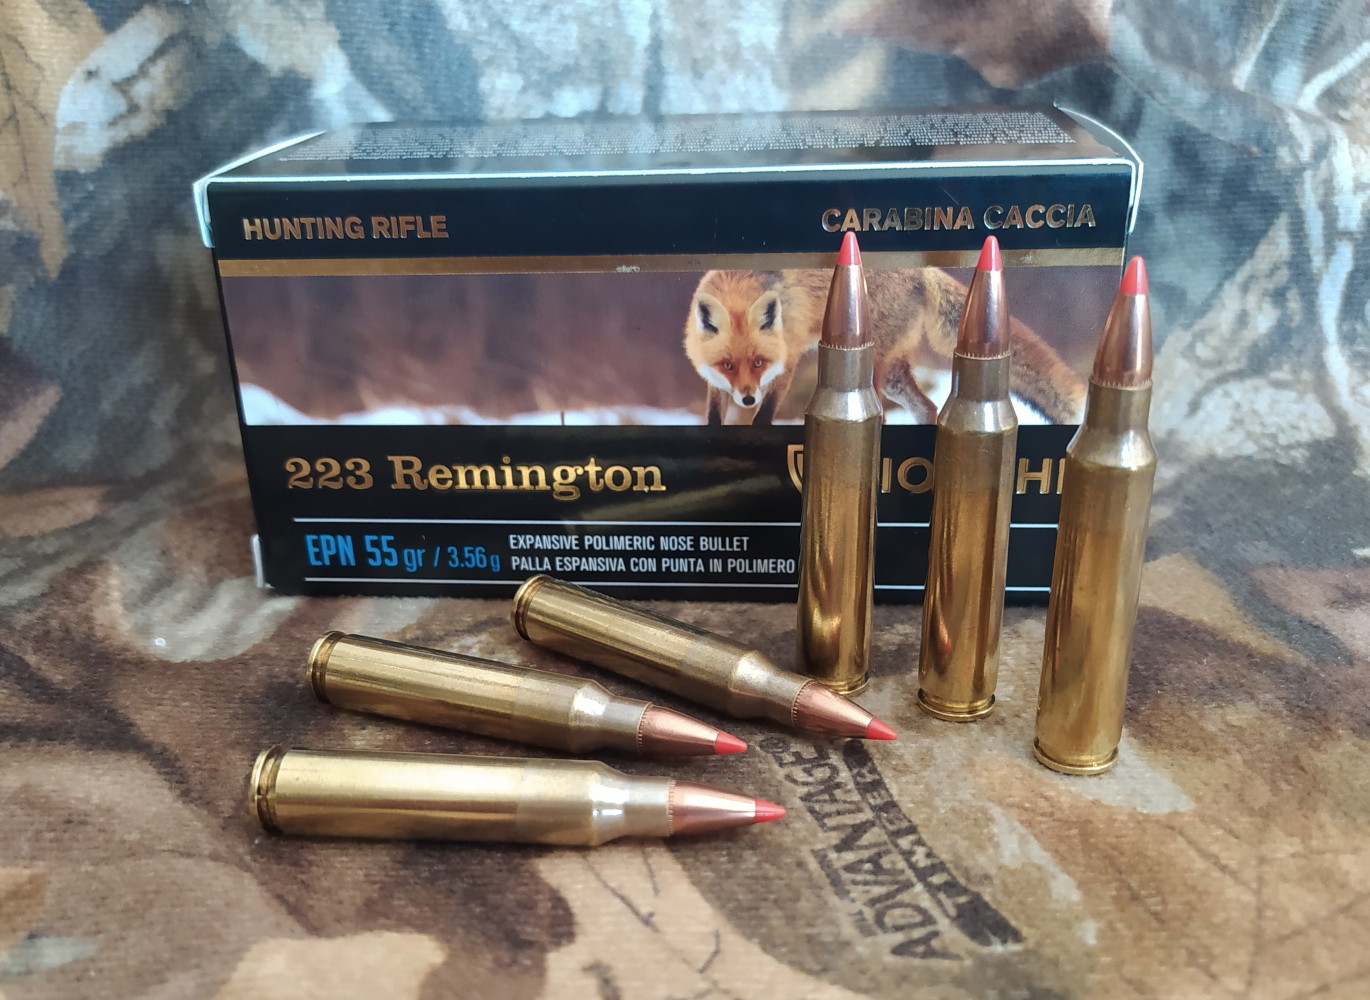 Fiocchi Epn calibro .223 Remington 55 grani il test